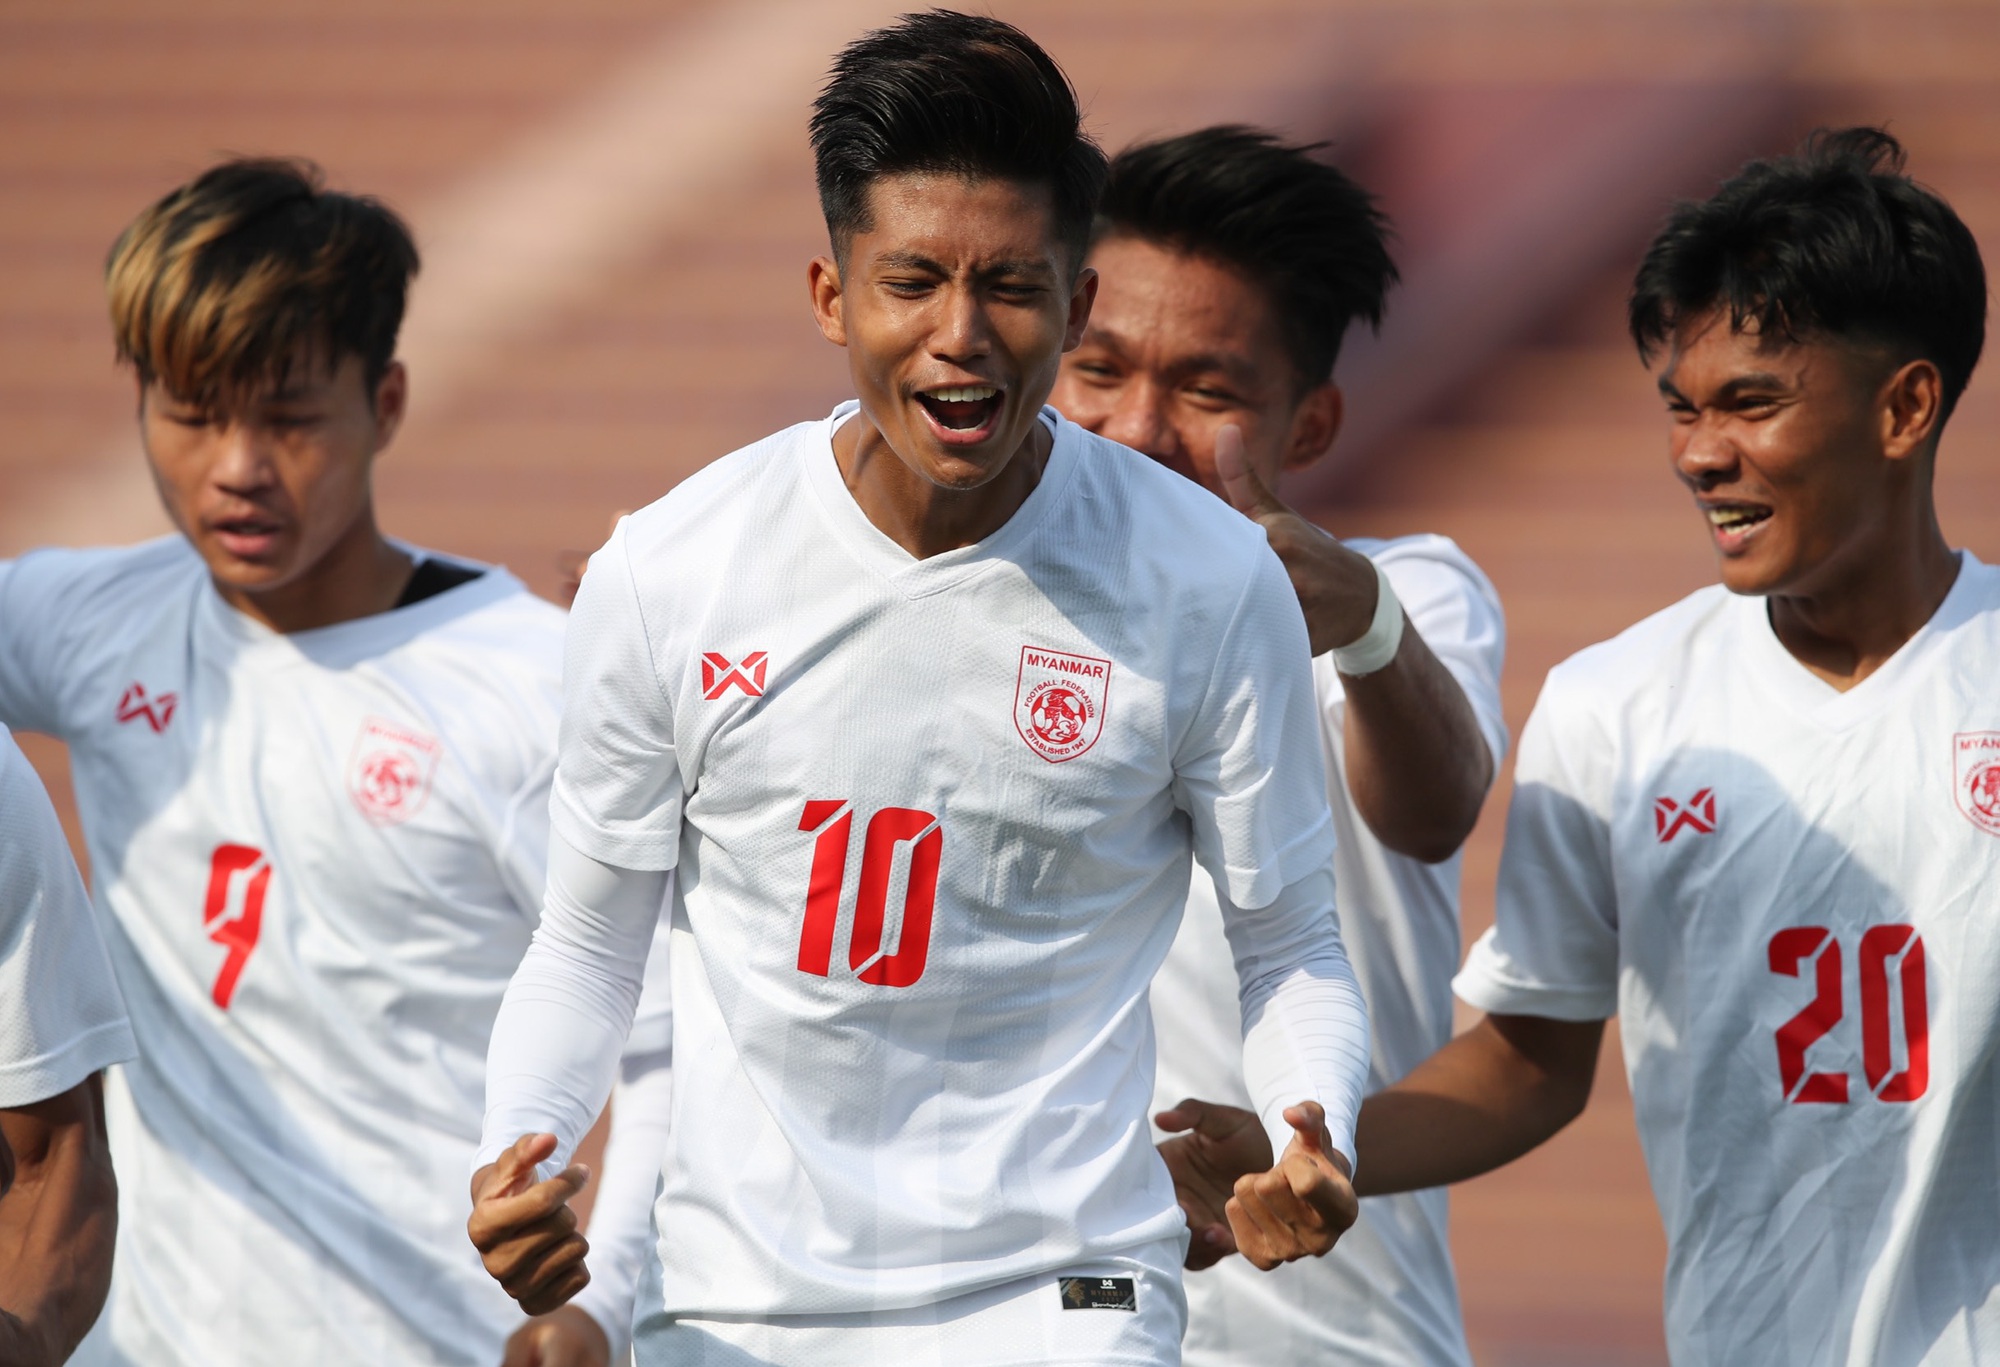 HLV U23 Myanmar, U23 Philippines không bao giờ tin U23 Việt Nam bị loại từ vòng bảng - Ảnh 1.